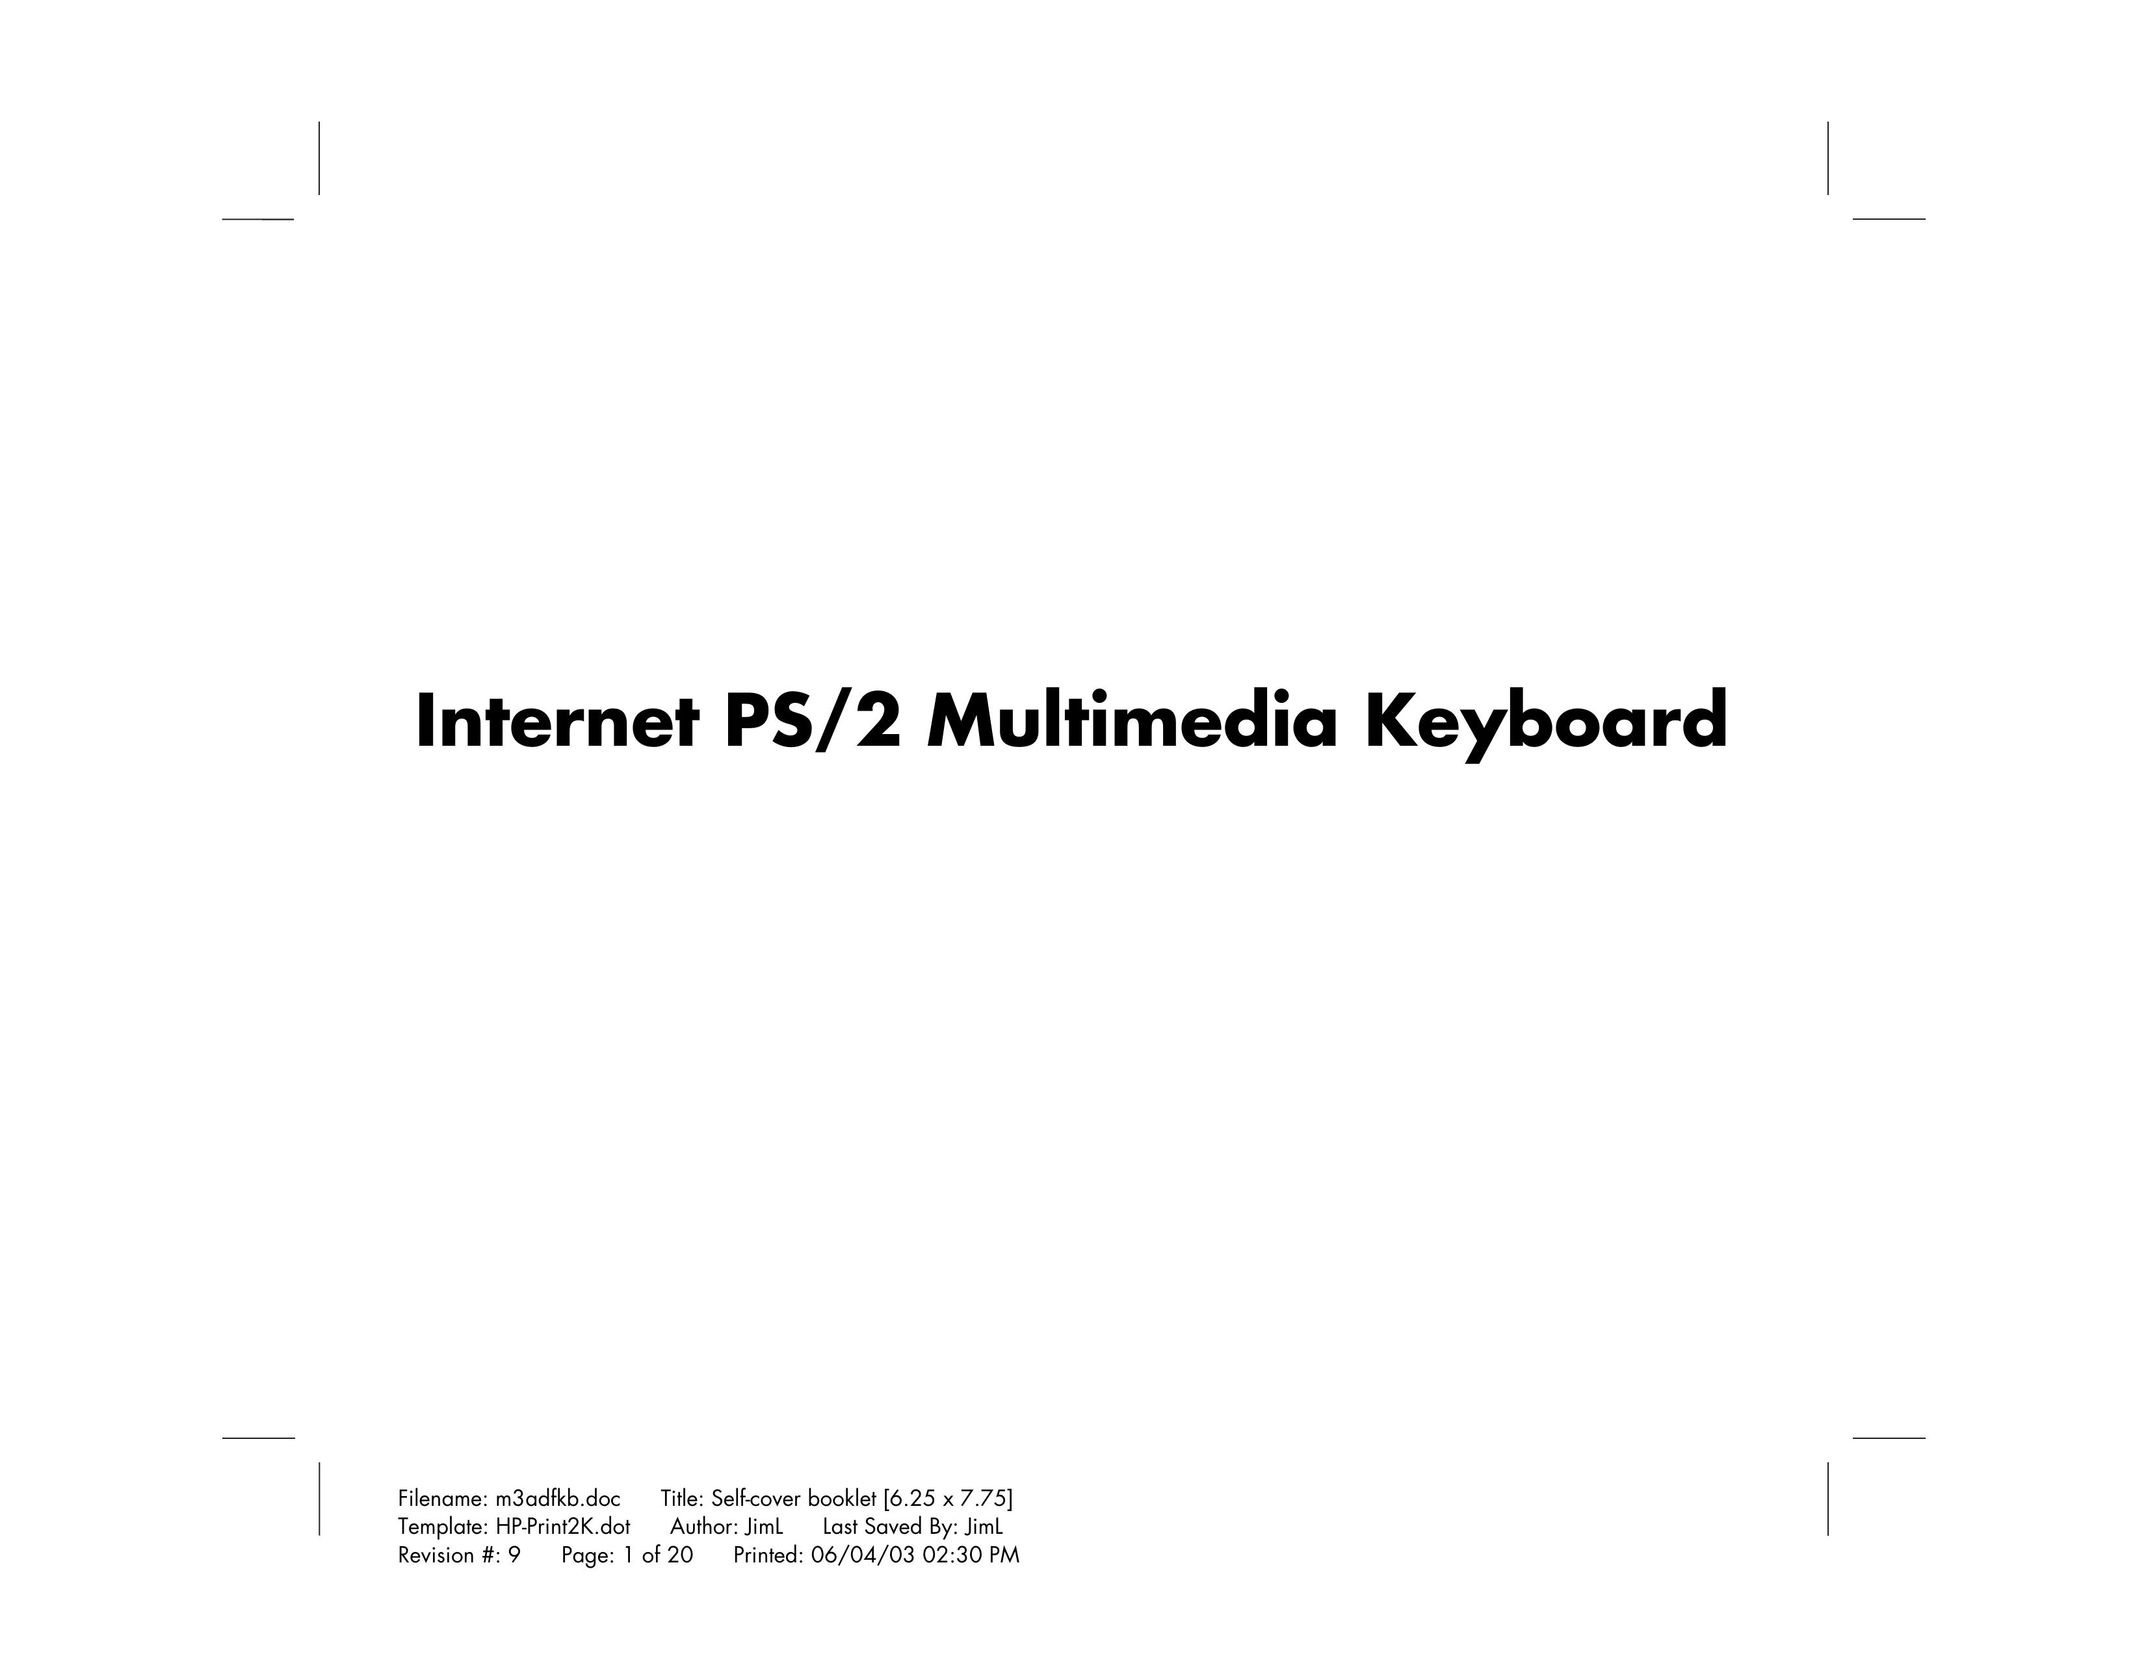 HP (Hewlett-Packard) PS/2 Computer Keyboard User Manual